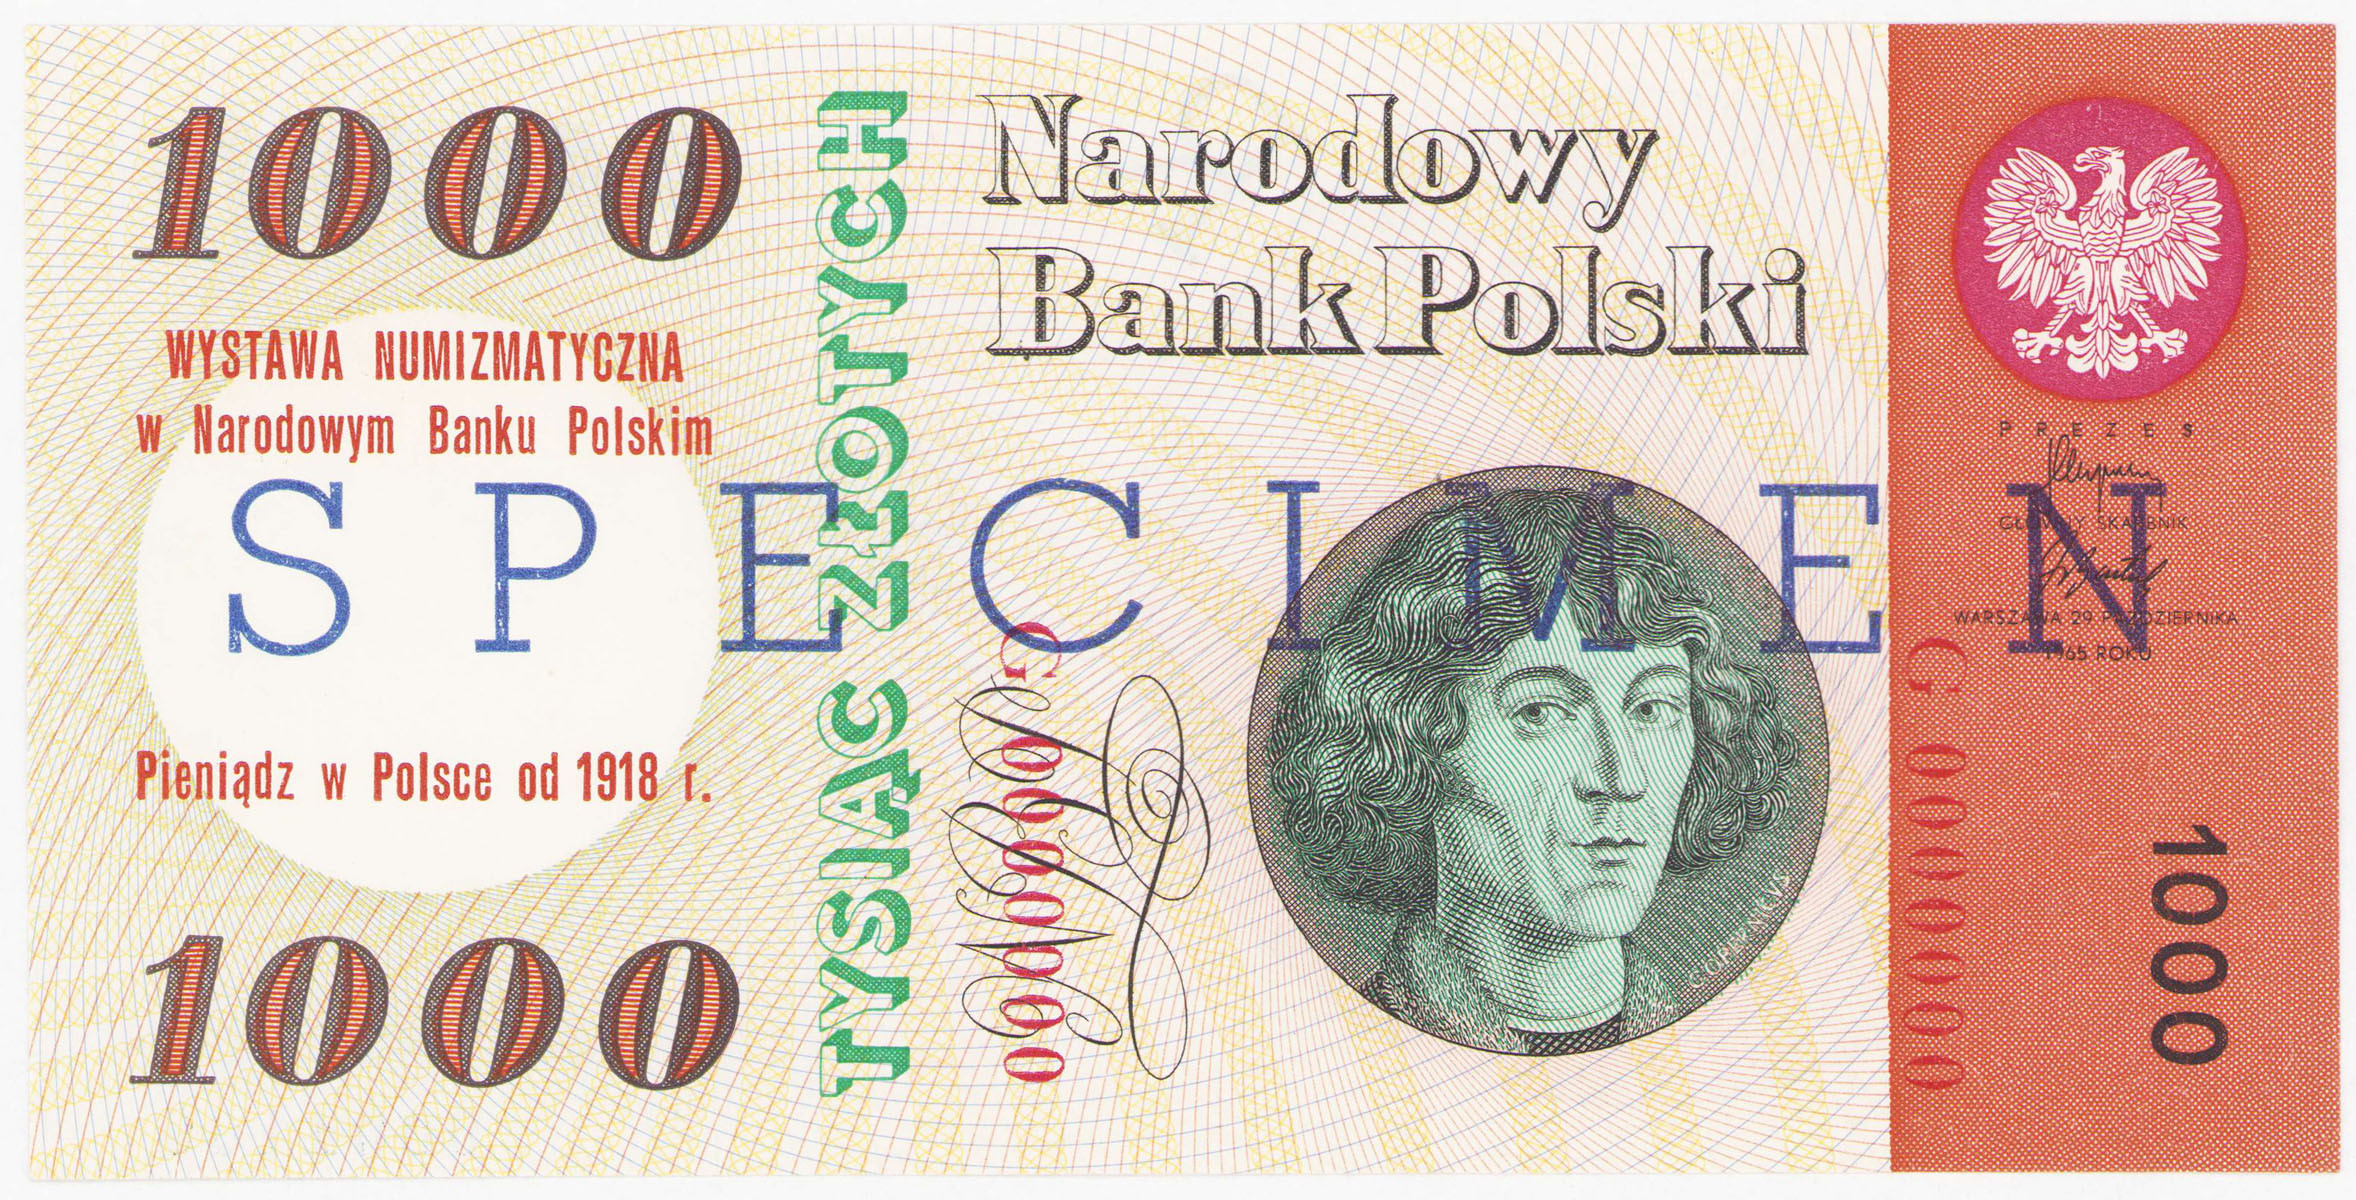 WZÓR / SPECIMEN. 1.000 złotych 1965 seria G, Kopernik